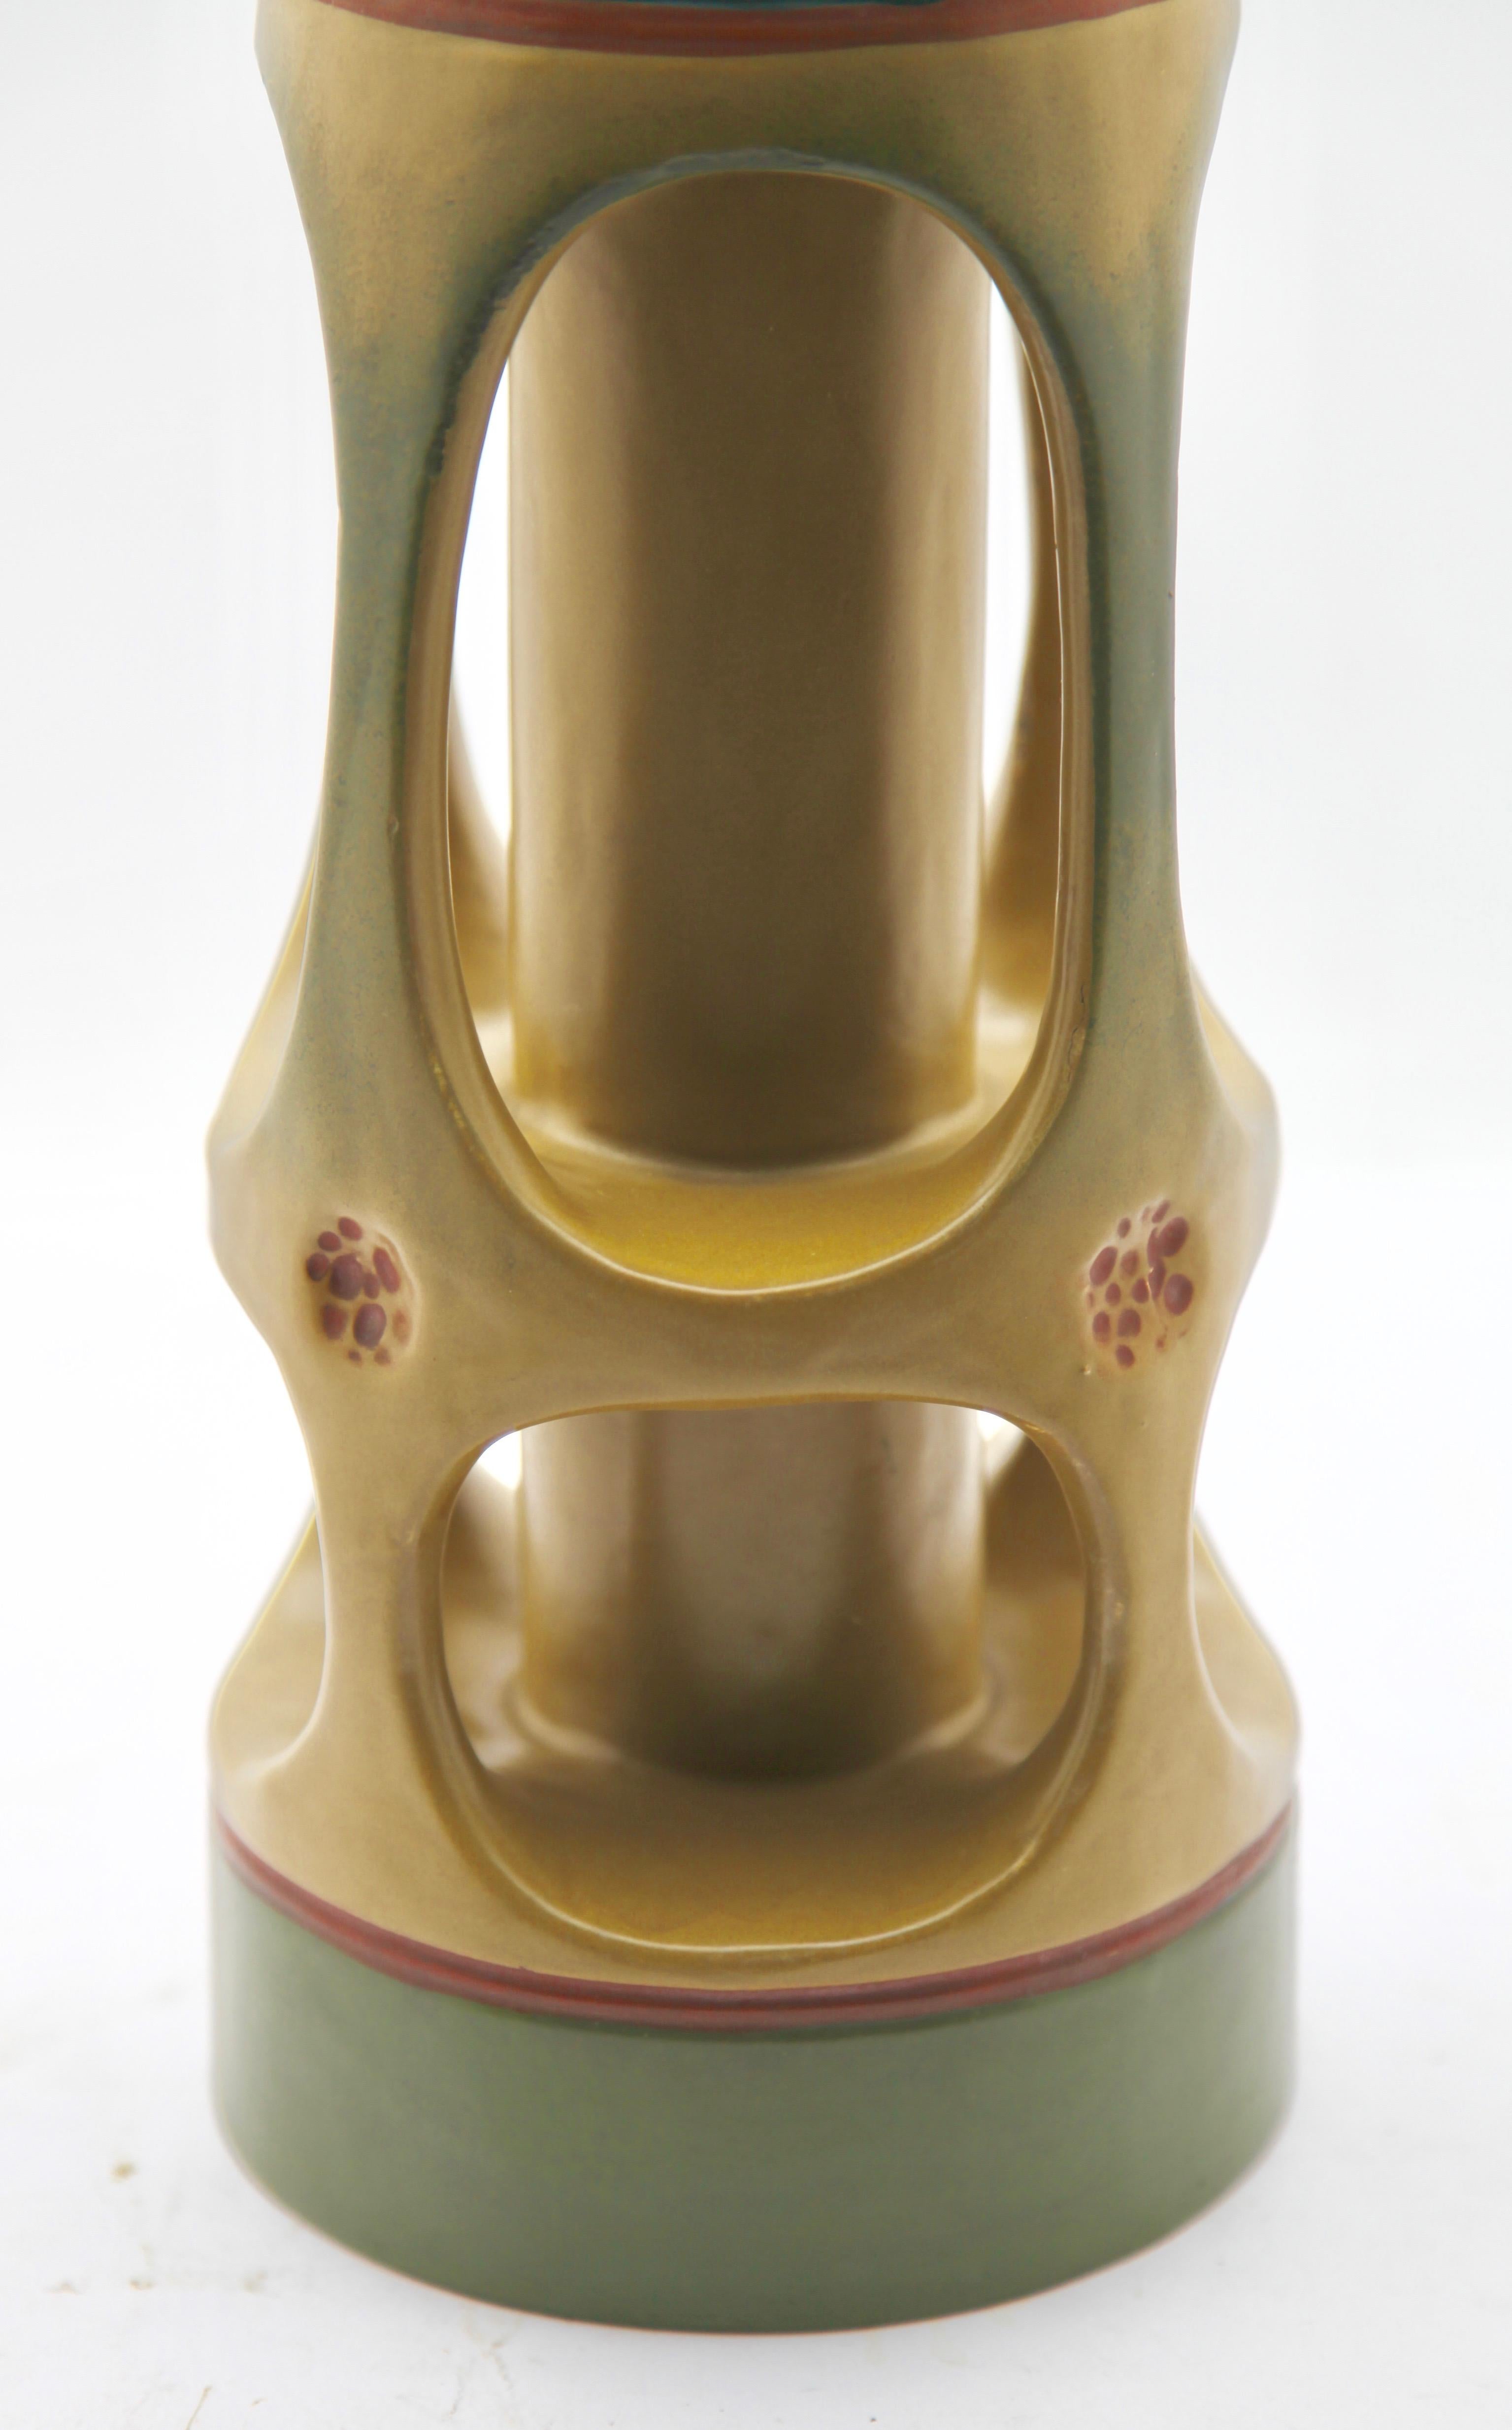 Ceramic Pair of Art Nouveau Vases, 'Amphora' by Julius Dressler, Vienna, circa 1905